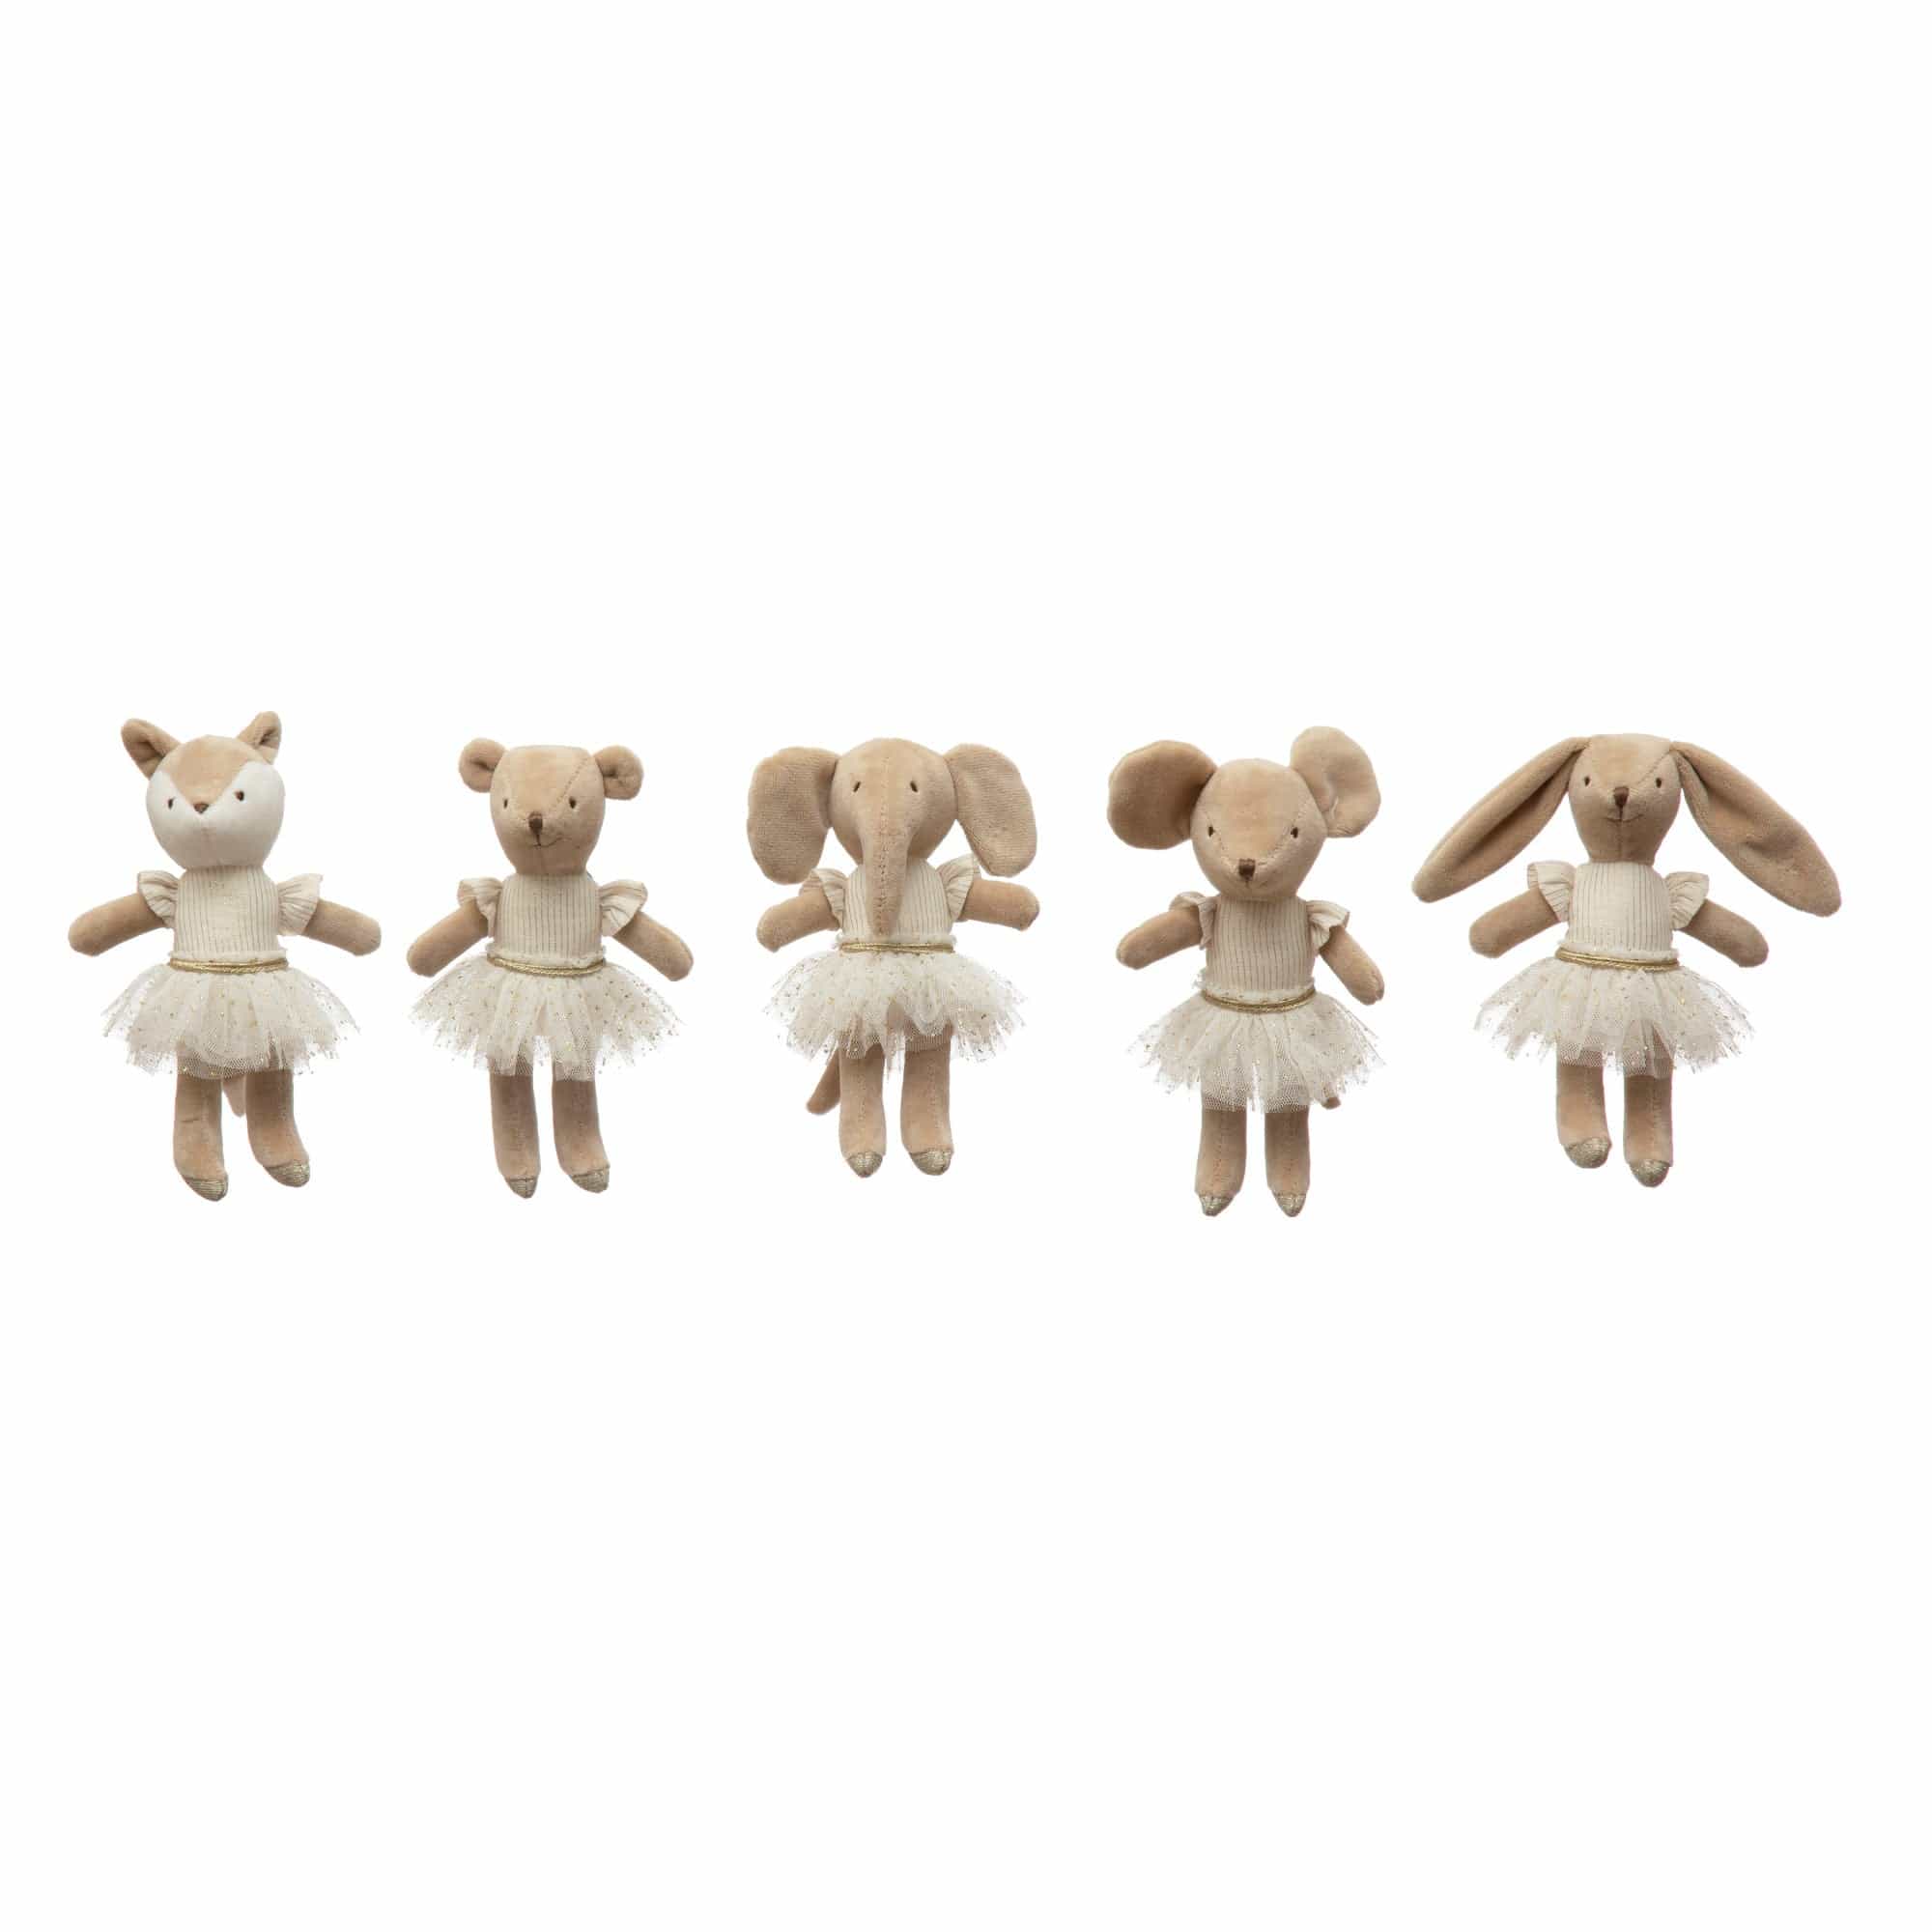 Creative Co-op Creative Co-op Plush Ballerina Animals - Little Miss Muffin Children & Home